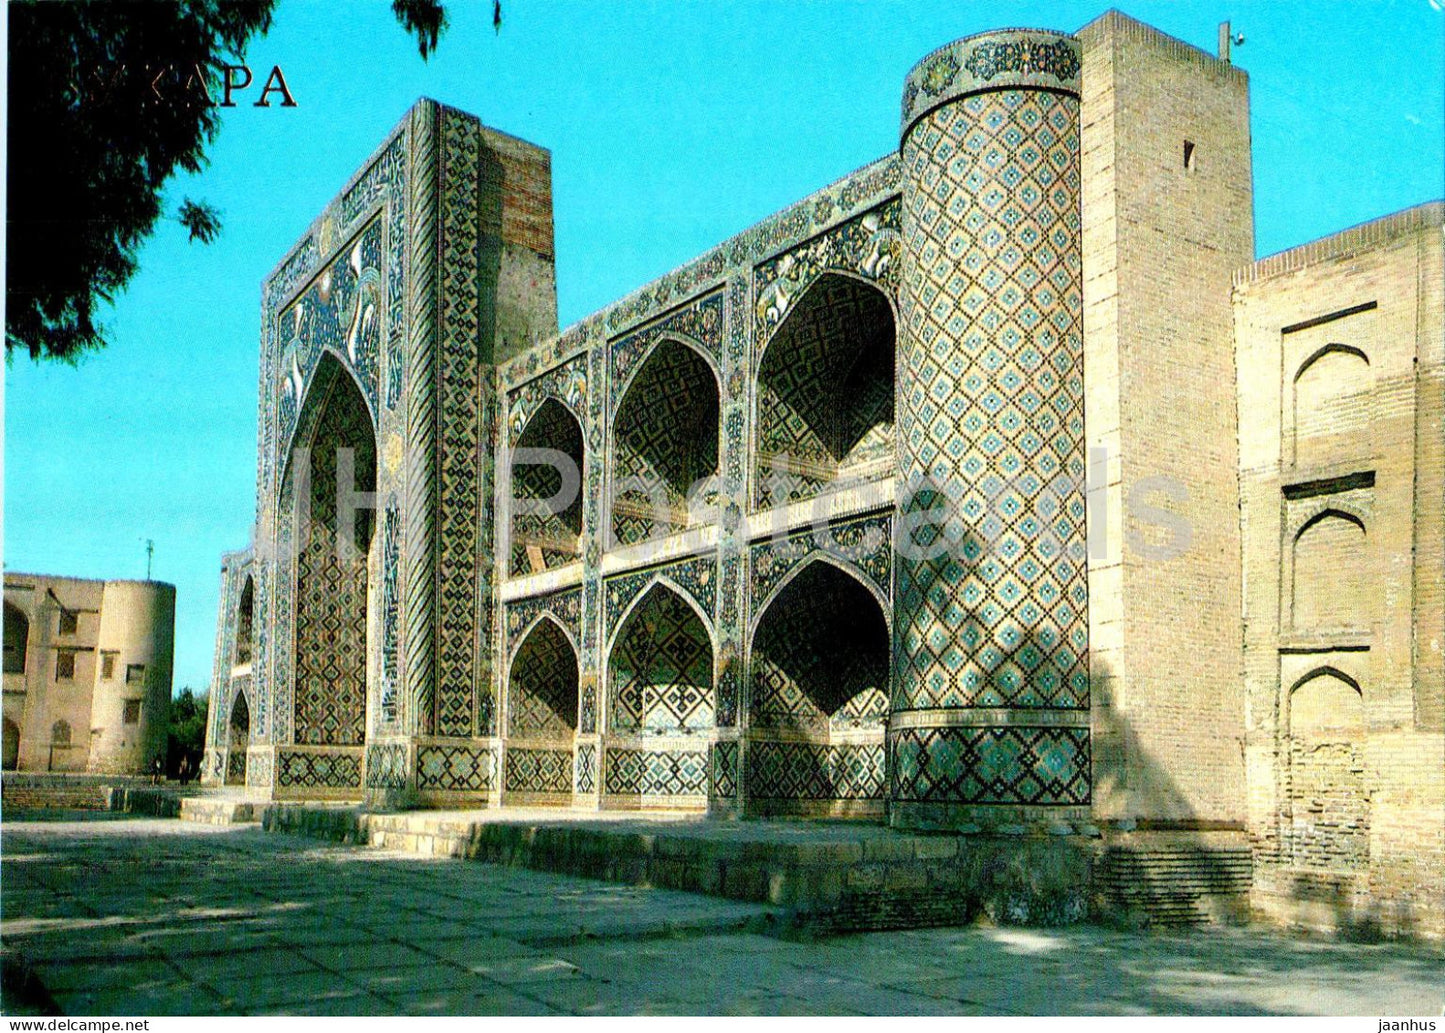 Bukhara - Nadir Divan-begi Madrassah - 1989 - Uzbekistan USSR - unused - JH Postcards